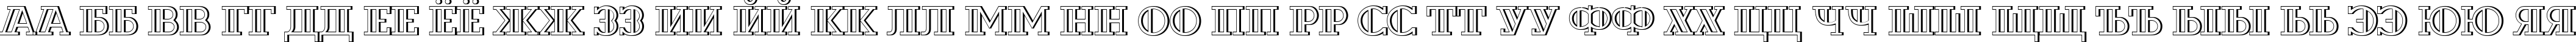 Пример написания русского алфавита шрифтом a_DexterOtlDecor3D